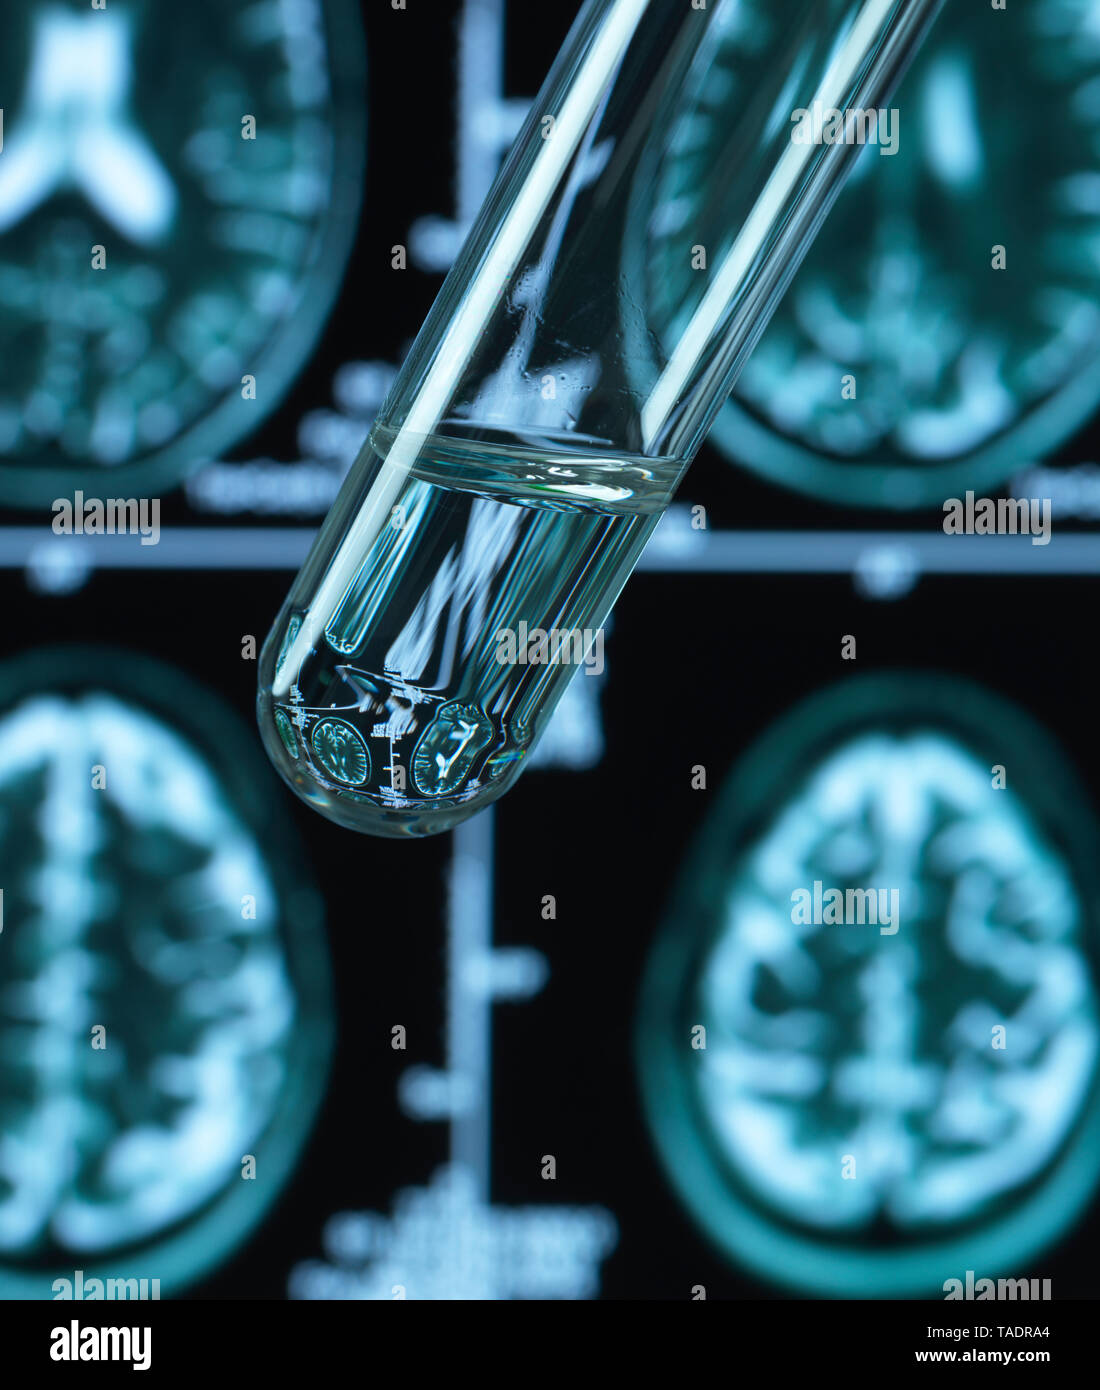 La recherche pharmaceutique dans les troubles du cerveau, y compris la démence et la maladie d'alzheimer Banque D'Images